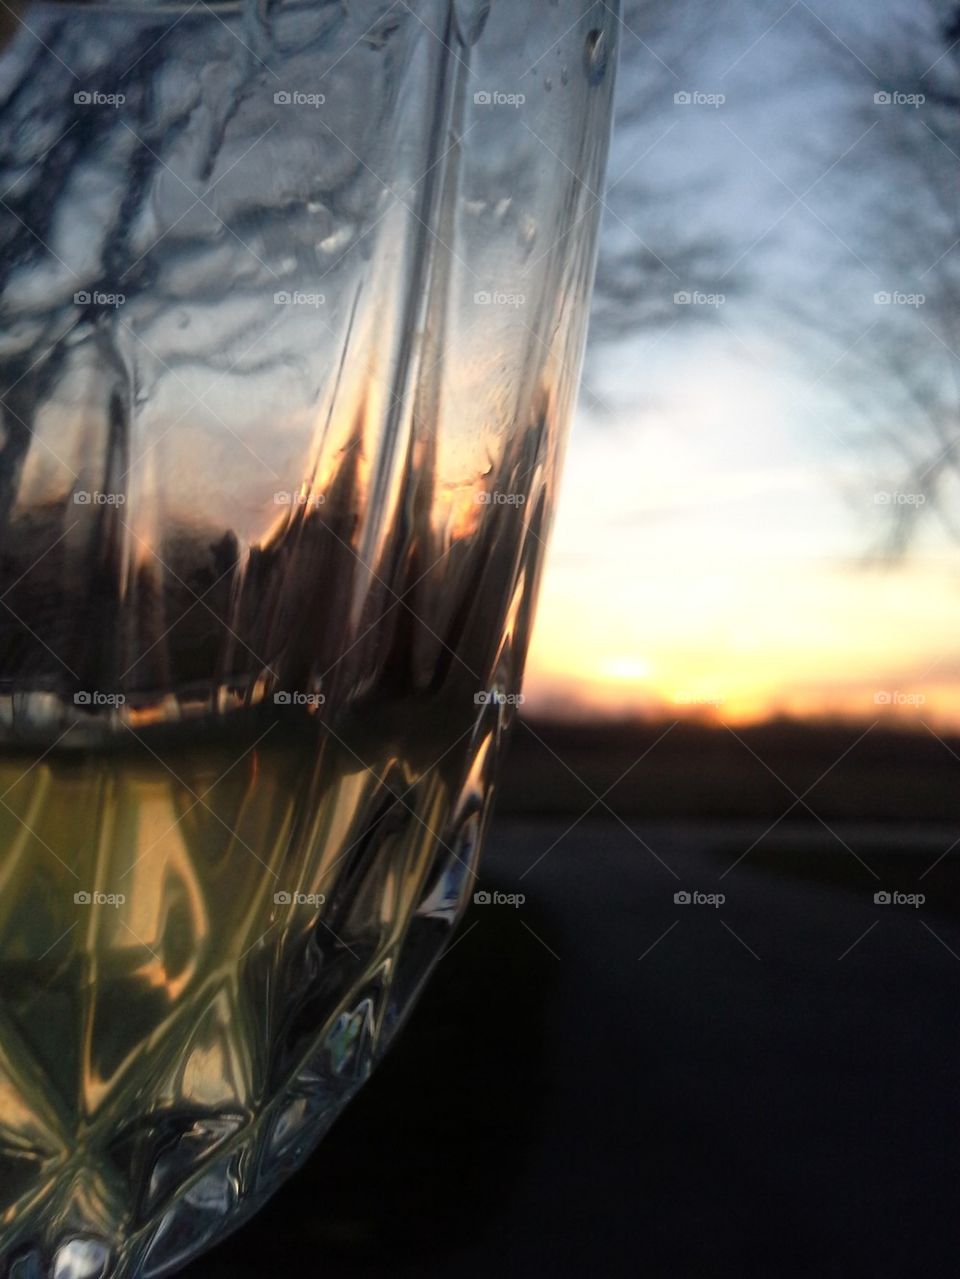 Sunset wine